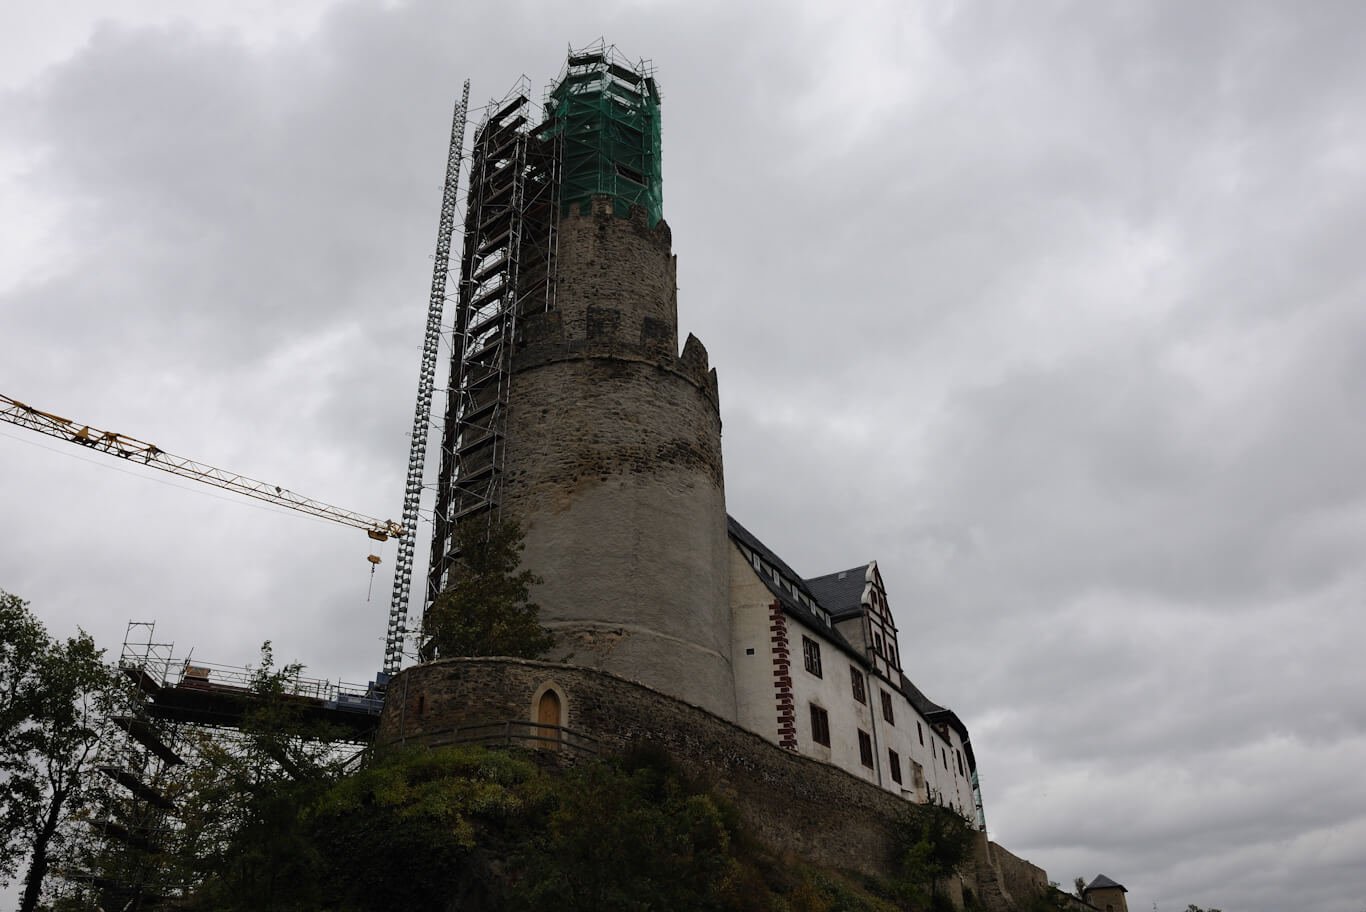 Seitlicher Blick auf Turm der Osterburg welcher von Baugerüsten umzäunt ist